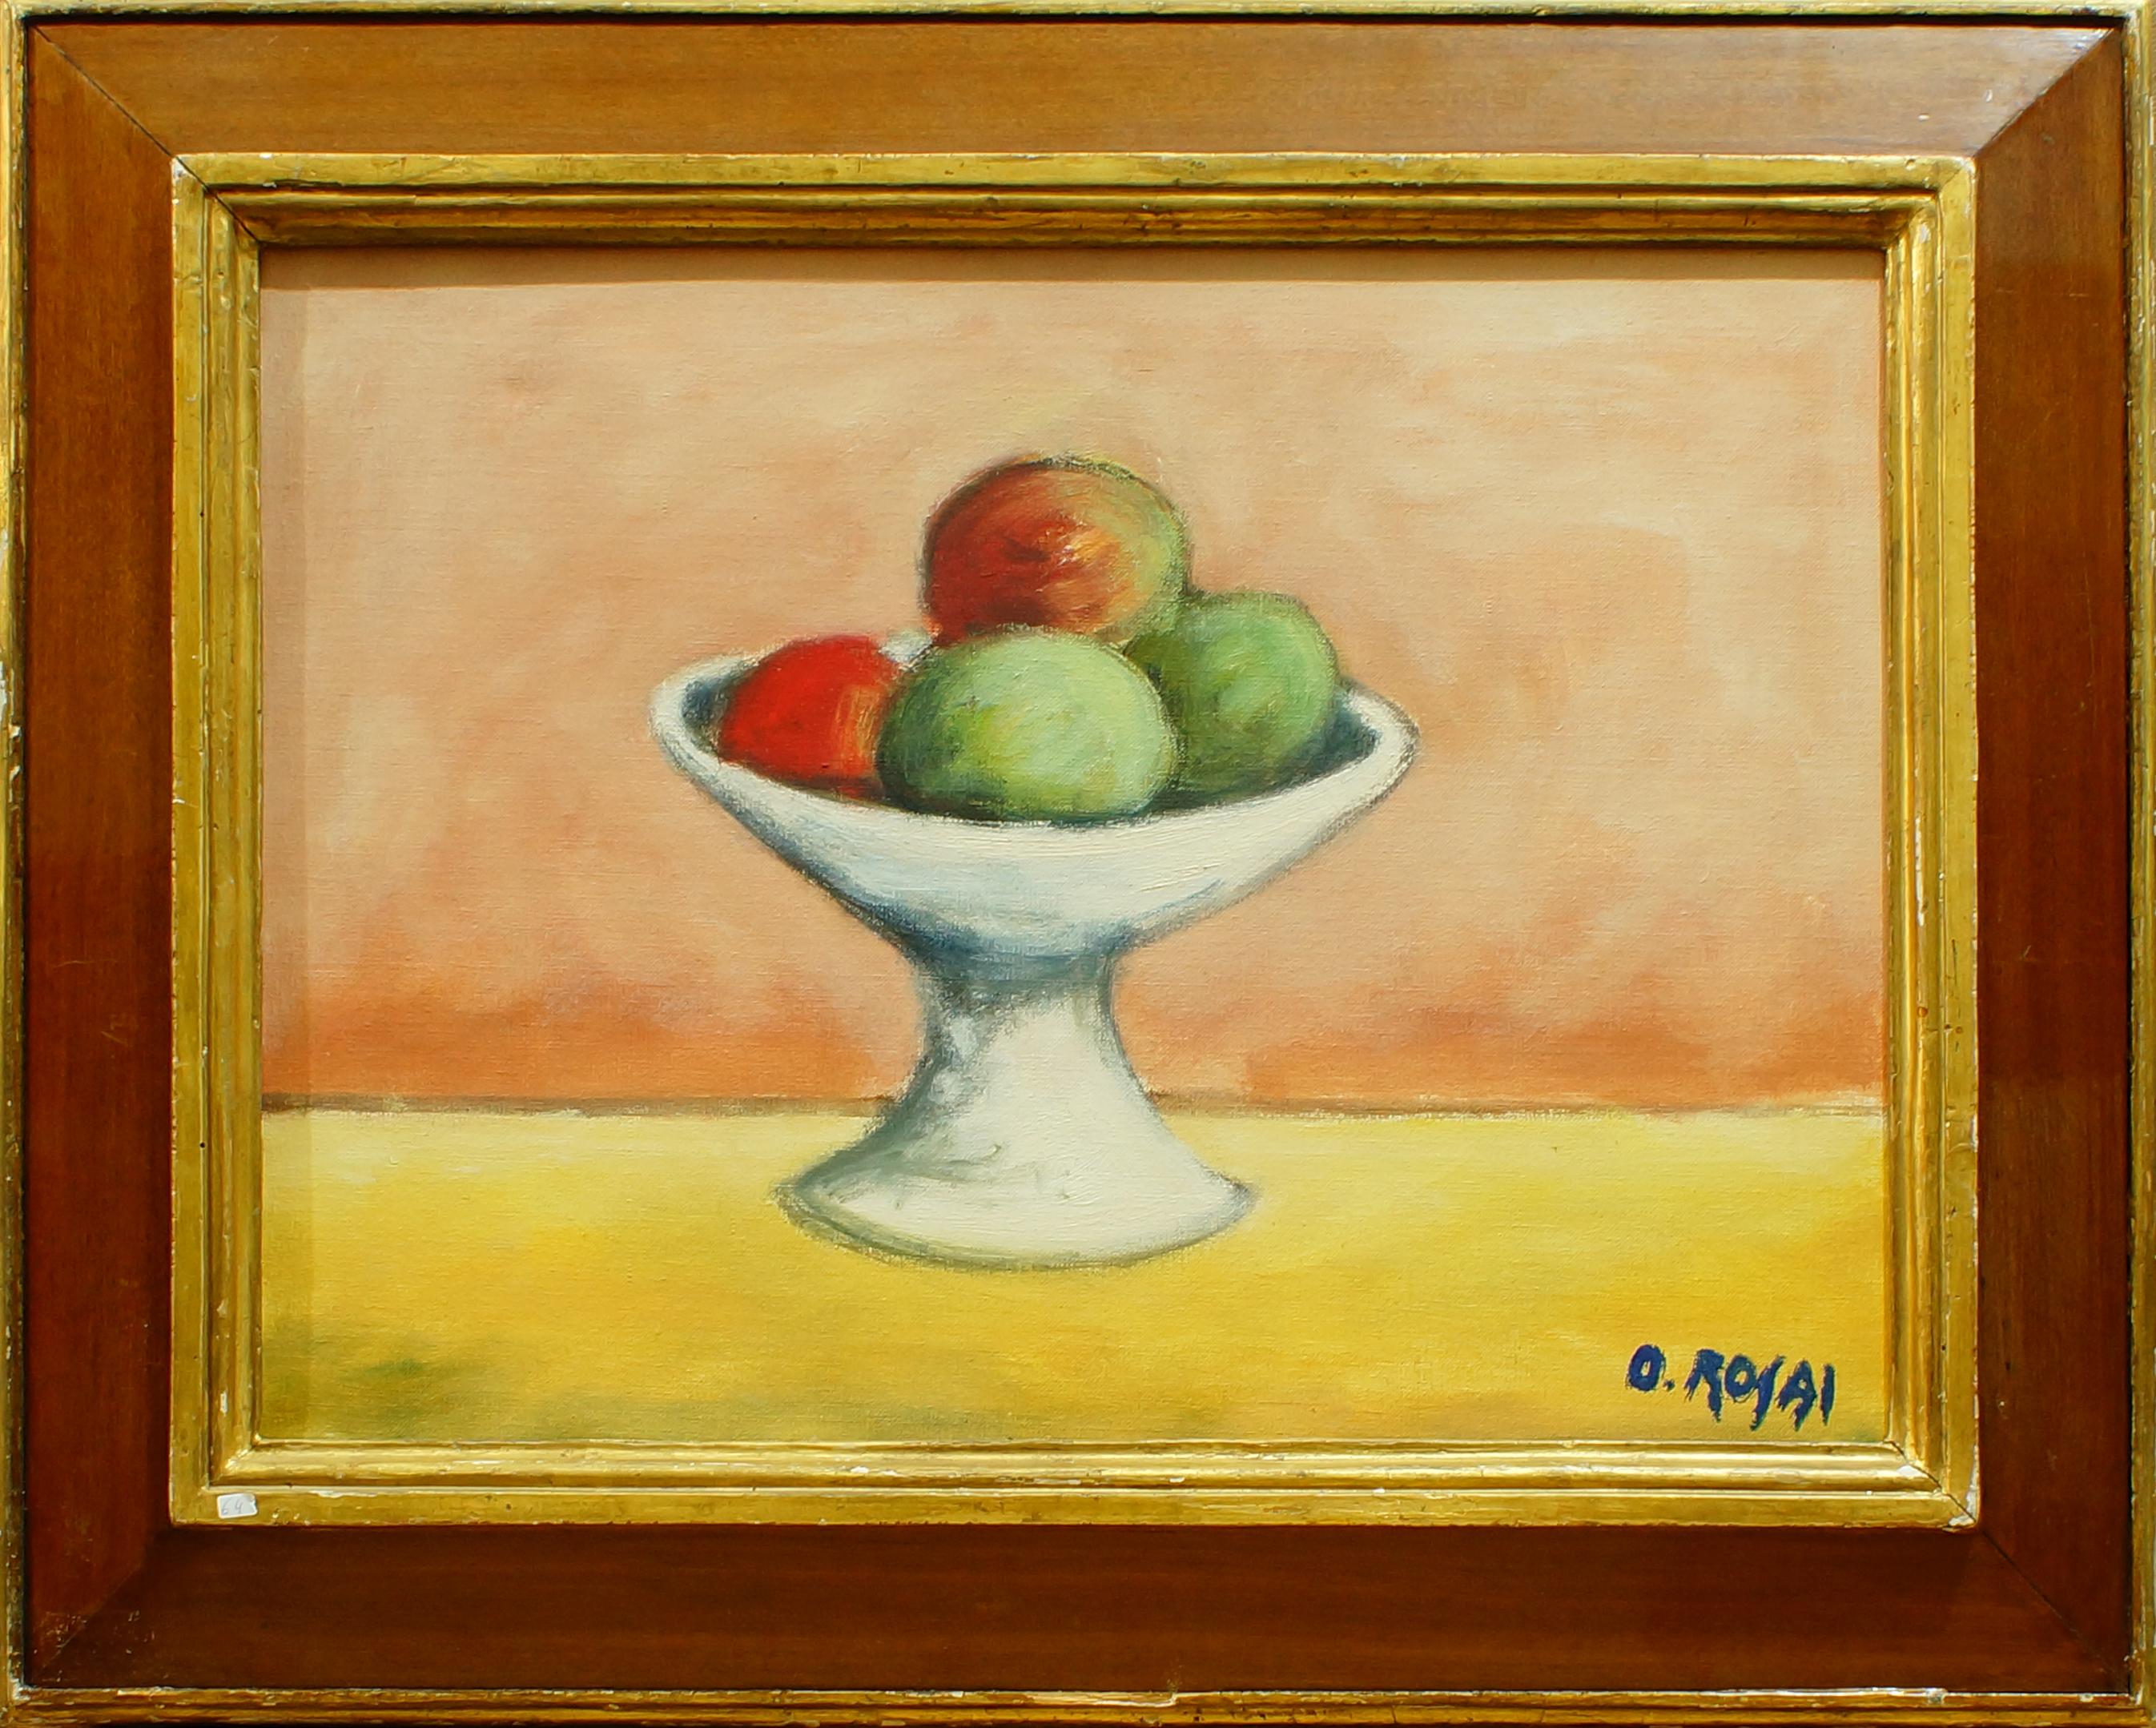 Nature morte avec fruits - Huile sur toile d'Ottone Rosai - 1950 environ.